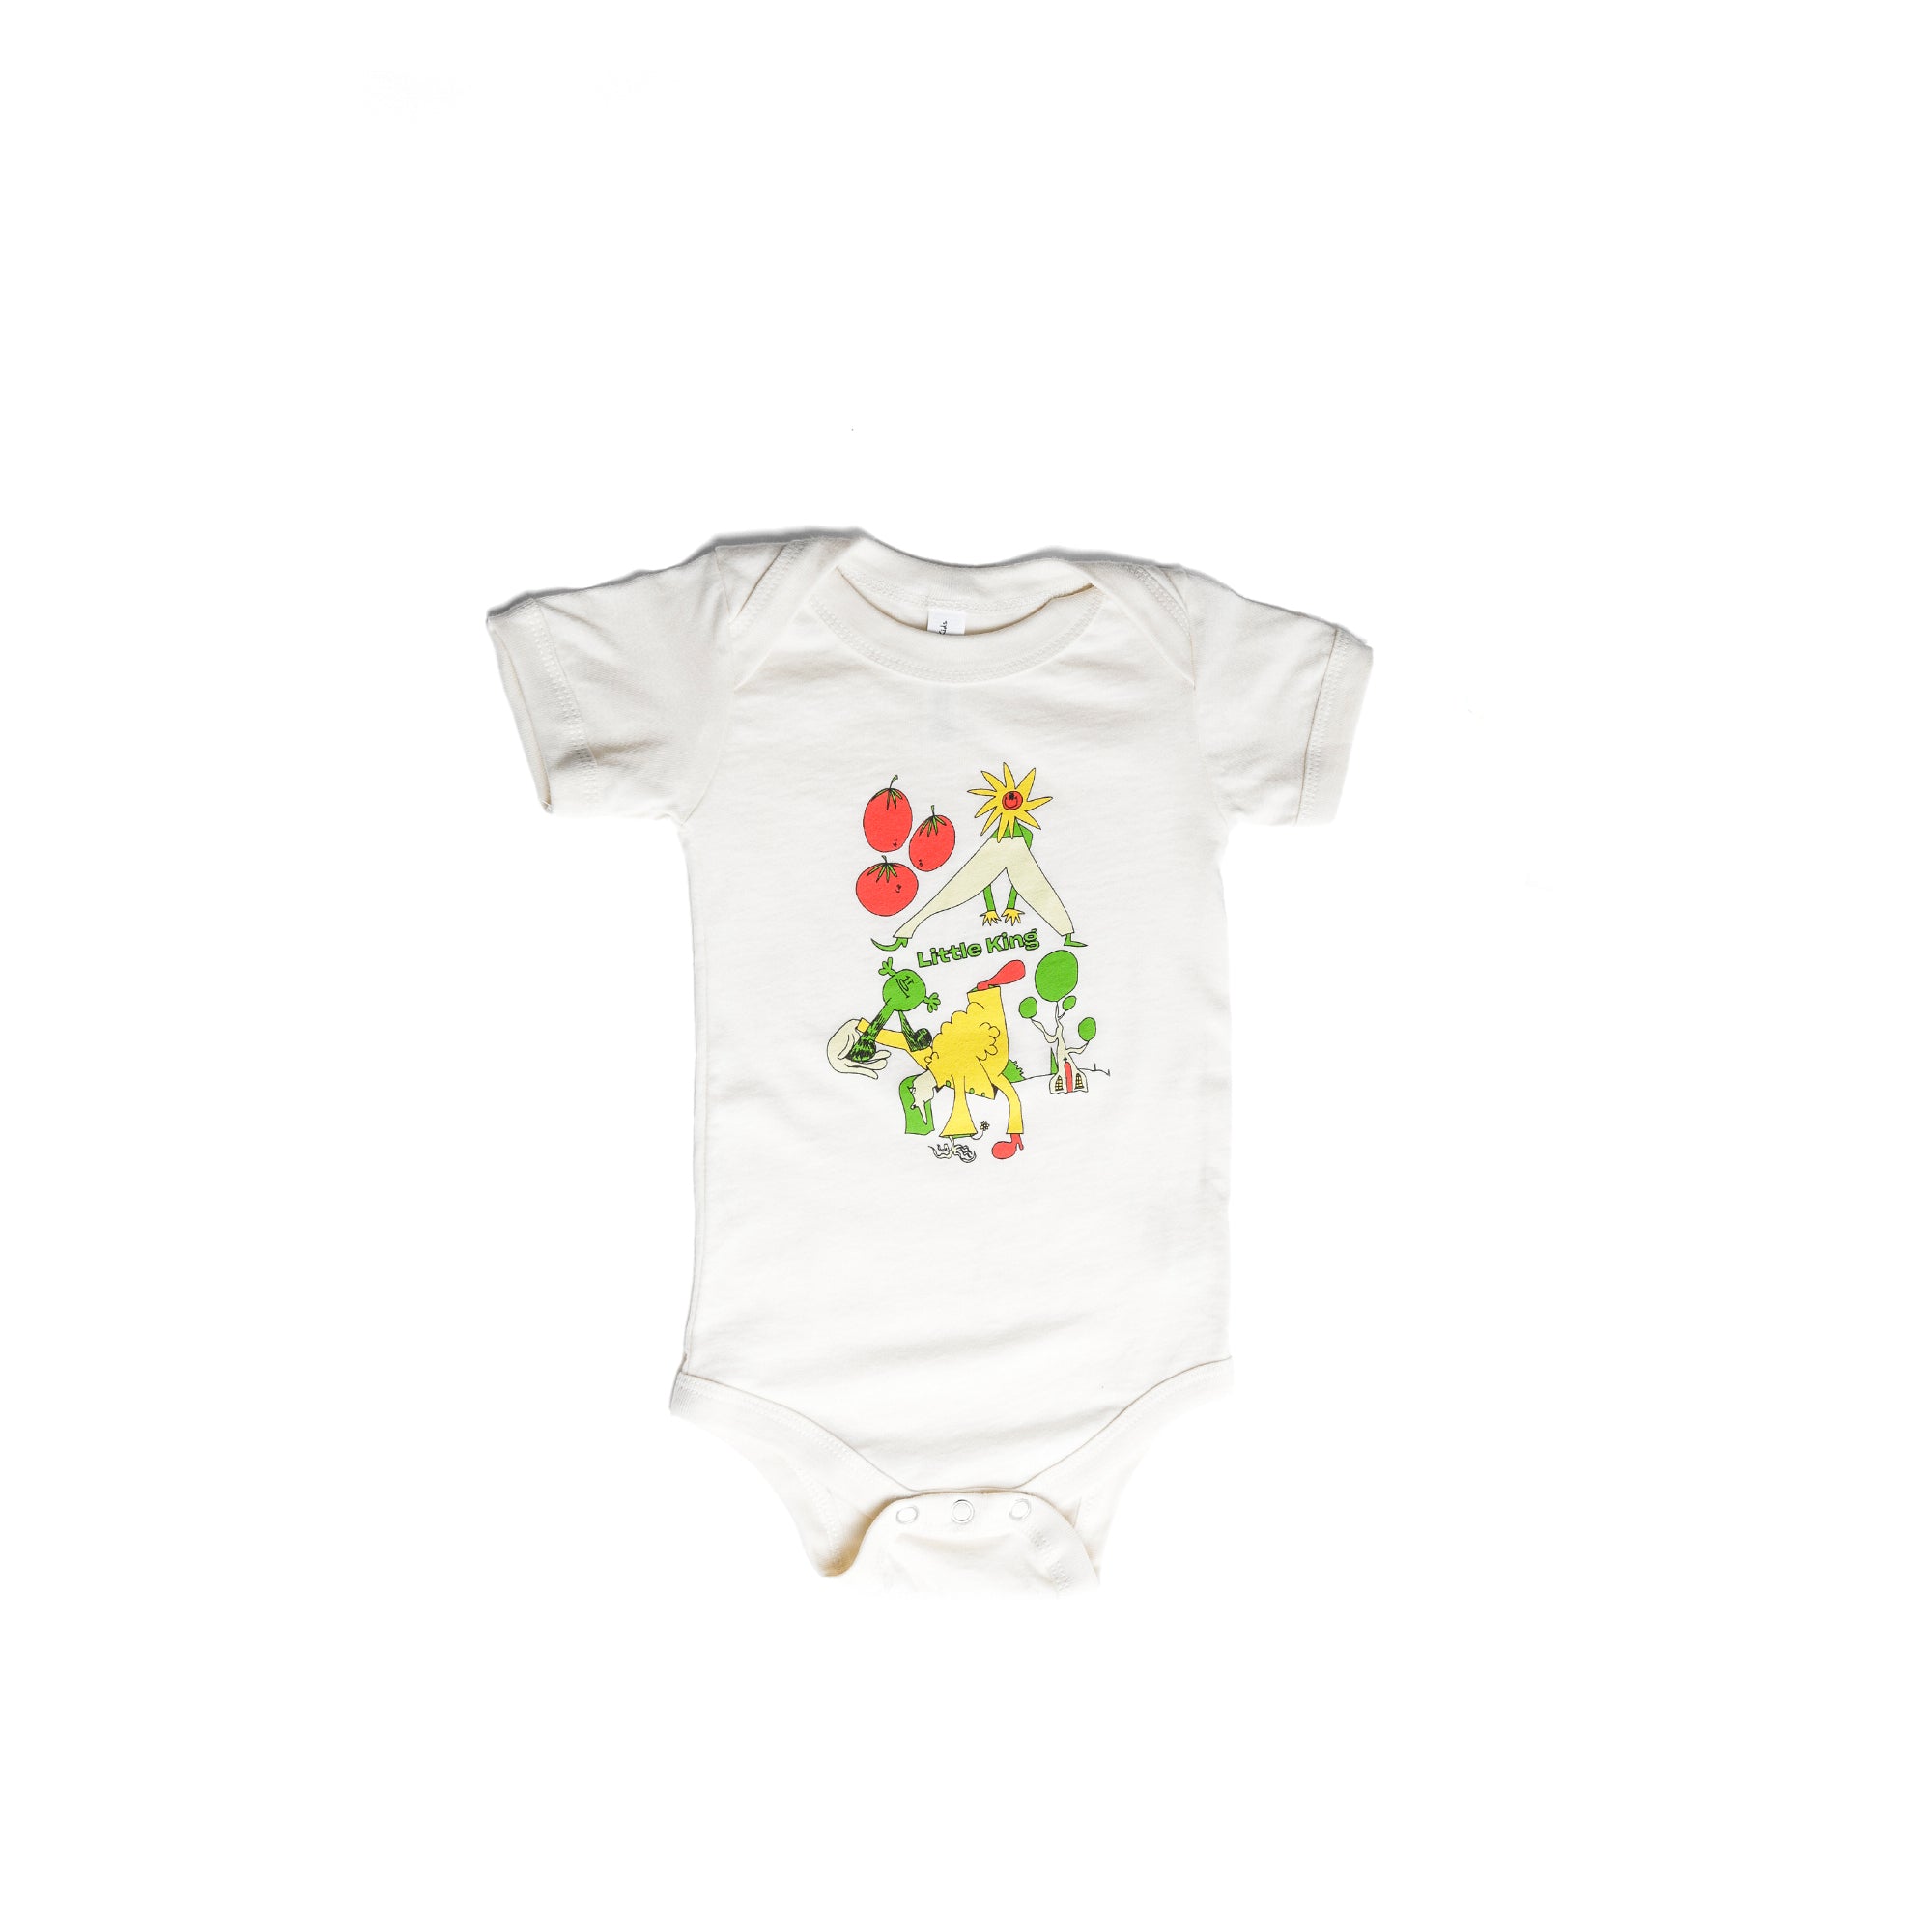 Sakari x Little King Infant Onesie, Cream / Color